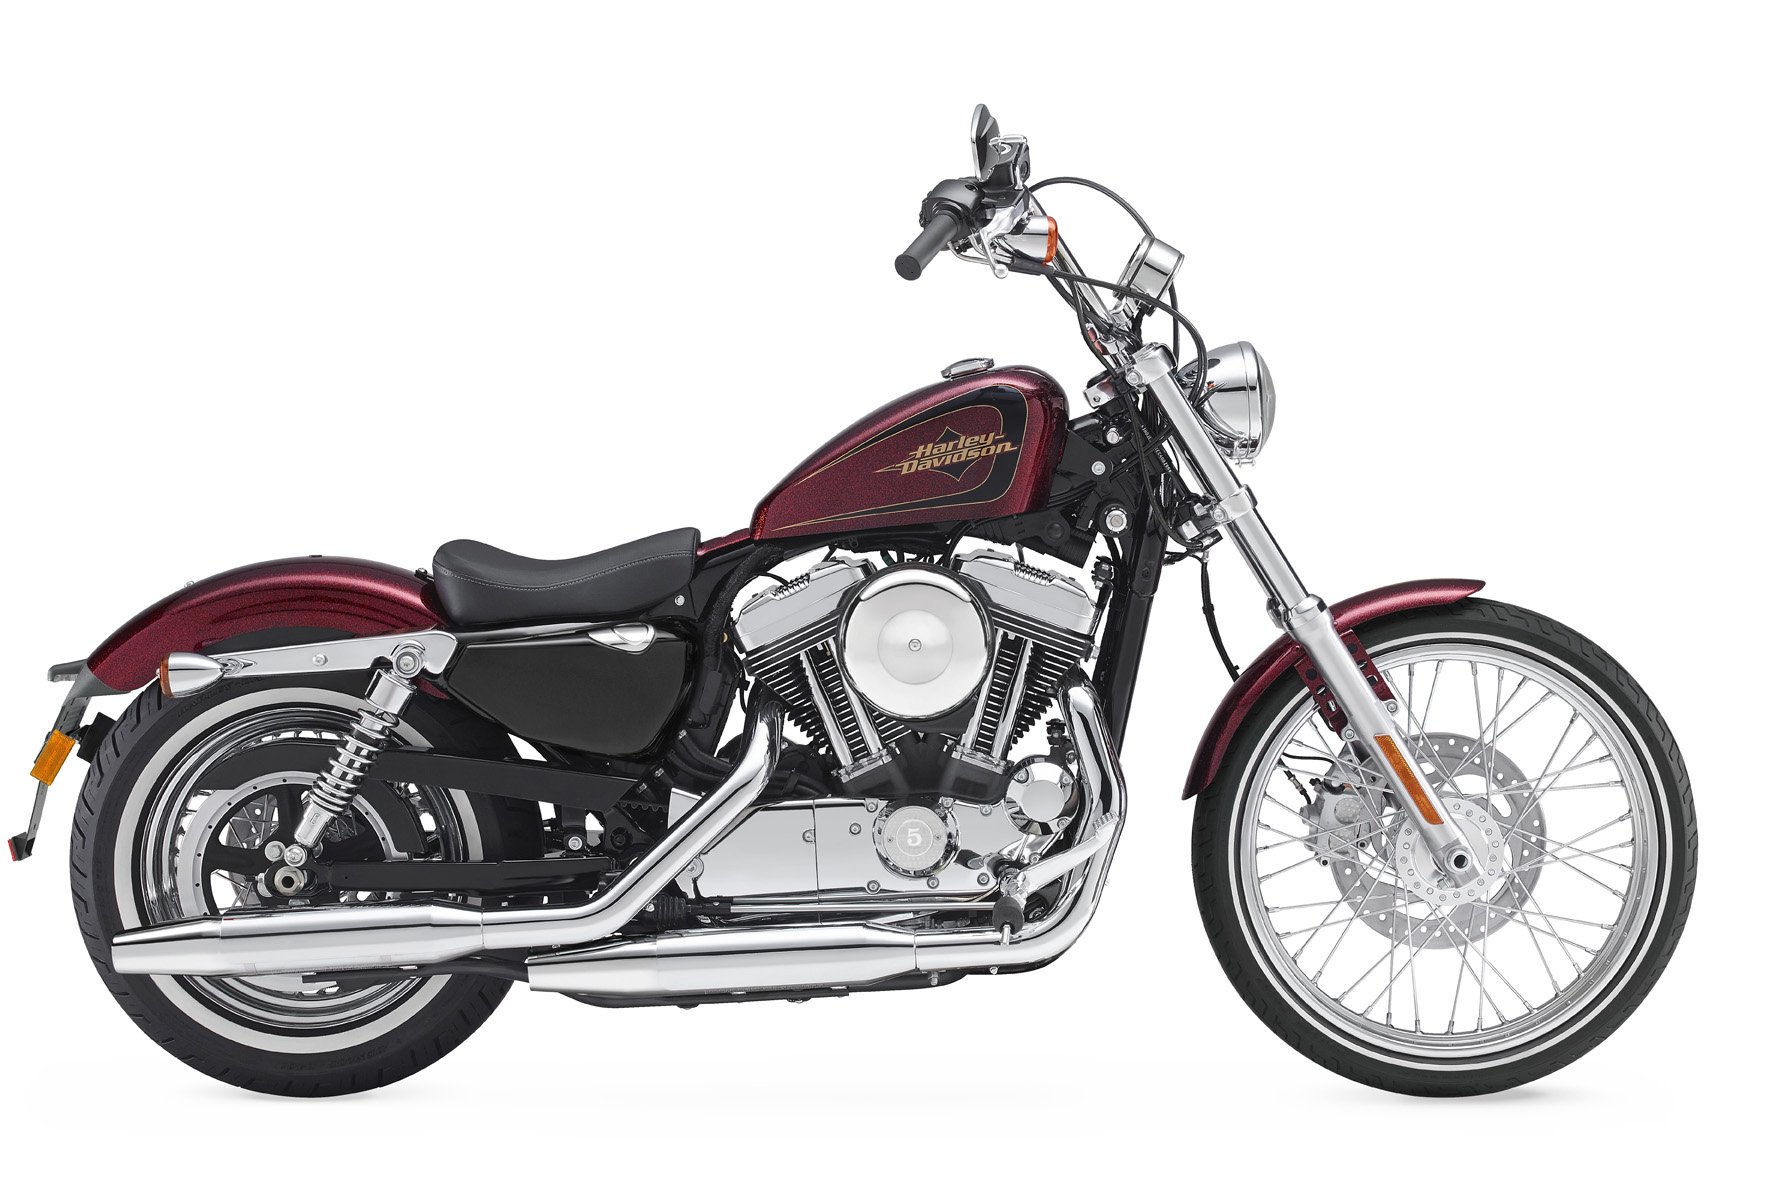 Motorrad Vergleich Harley Davidson Sportster Xl 1200 V Seventy Two 2015 Vs Harley Davidson Sportster Xl 883 L Superlow 2020